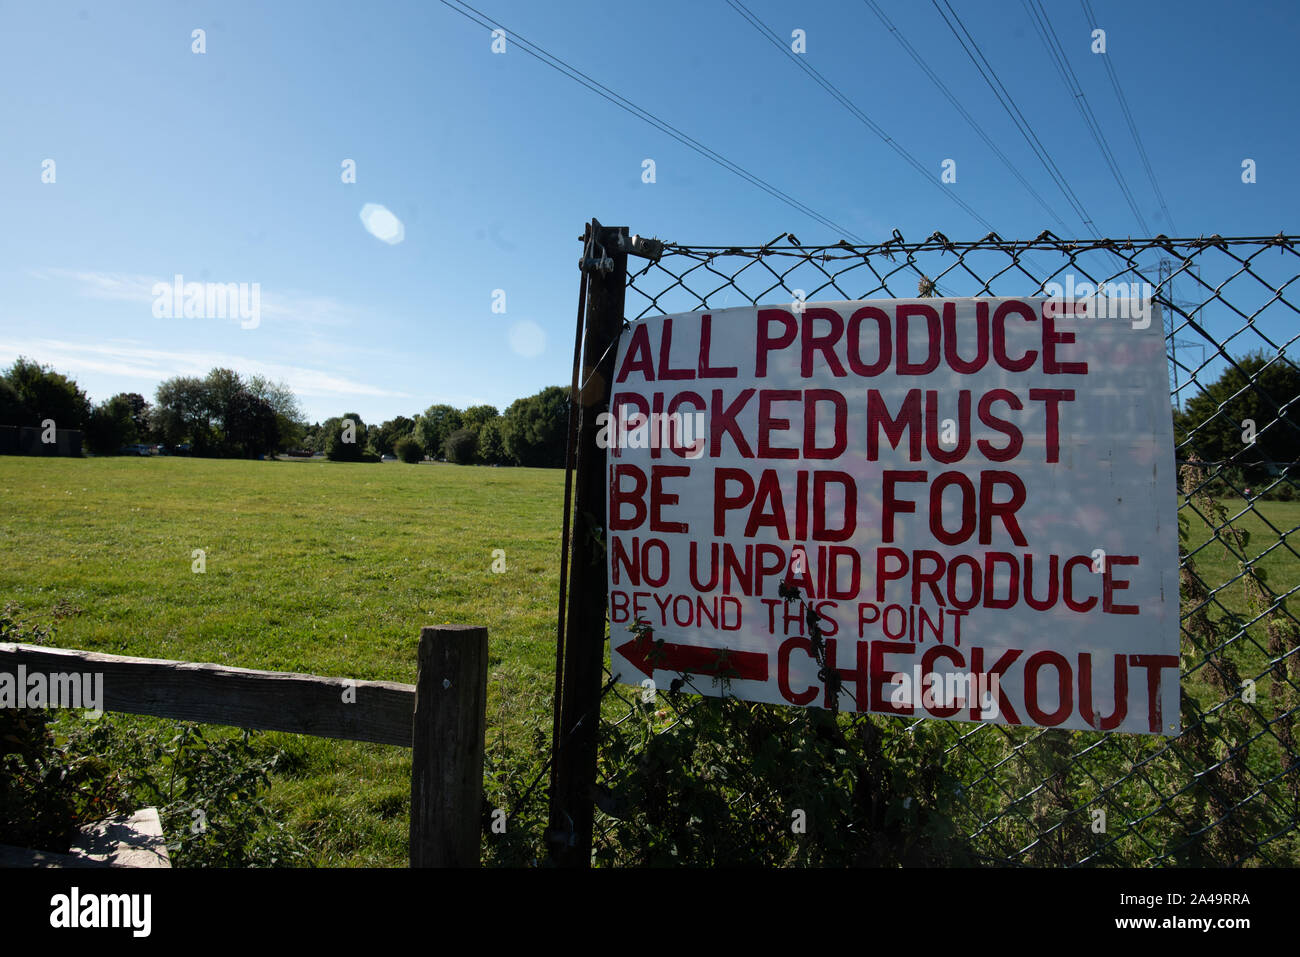 Kent, Großbritannien - 15 September, 2019: eine rot-weiße Schilder liest" Alle Erzeugnisse müssen Bezahlt" und "Keine unbezahlten Über diesen Punkt hinaus" zu produzieren. Stockfoto